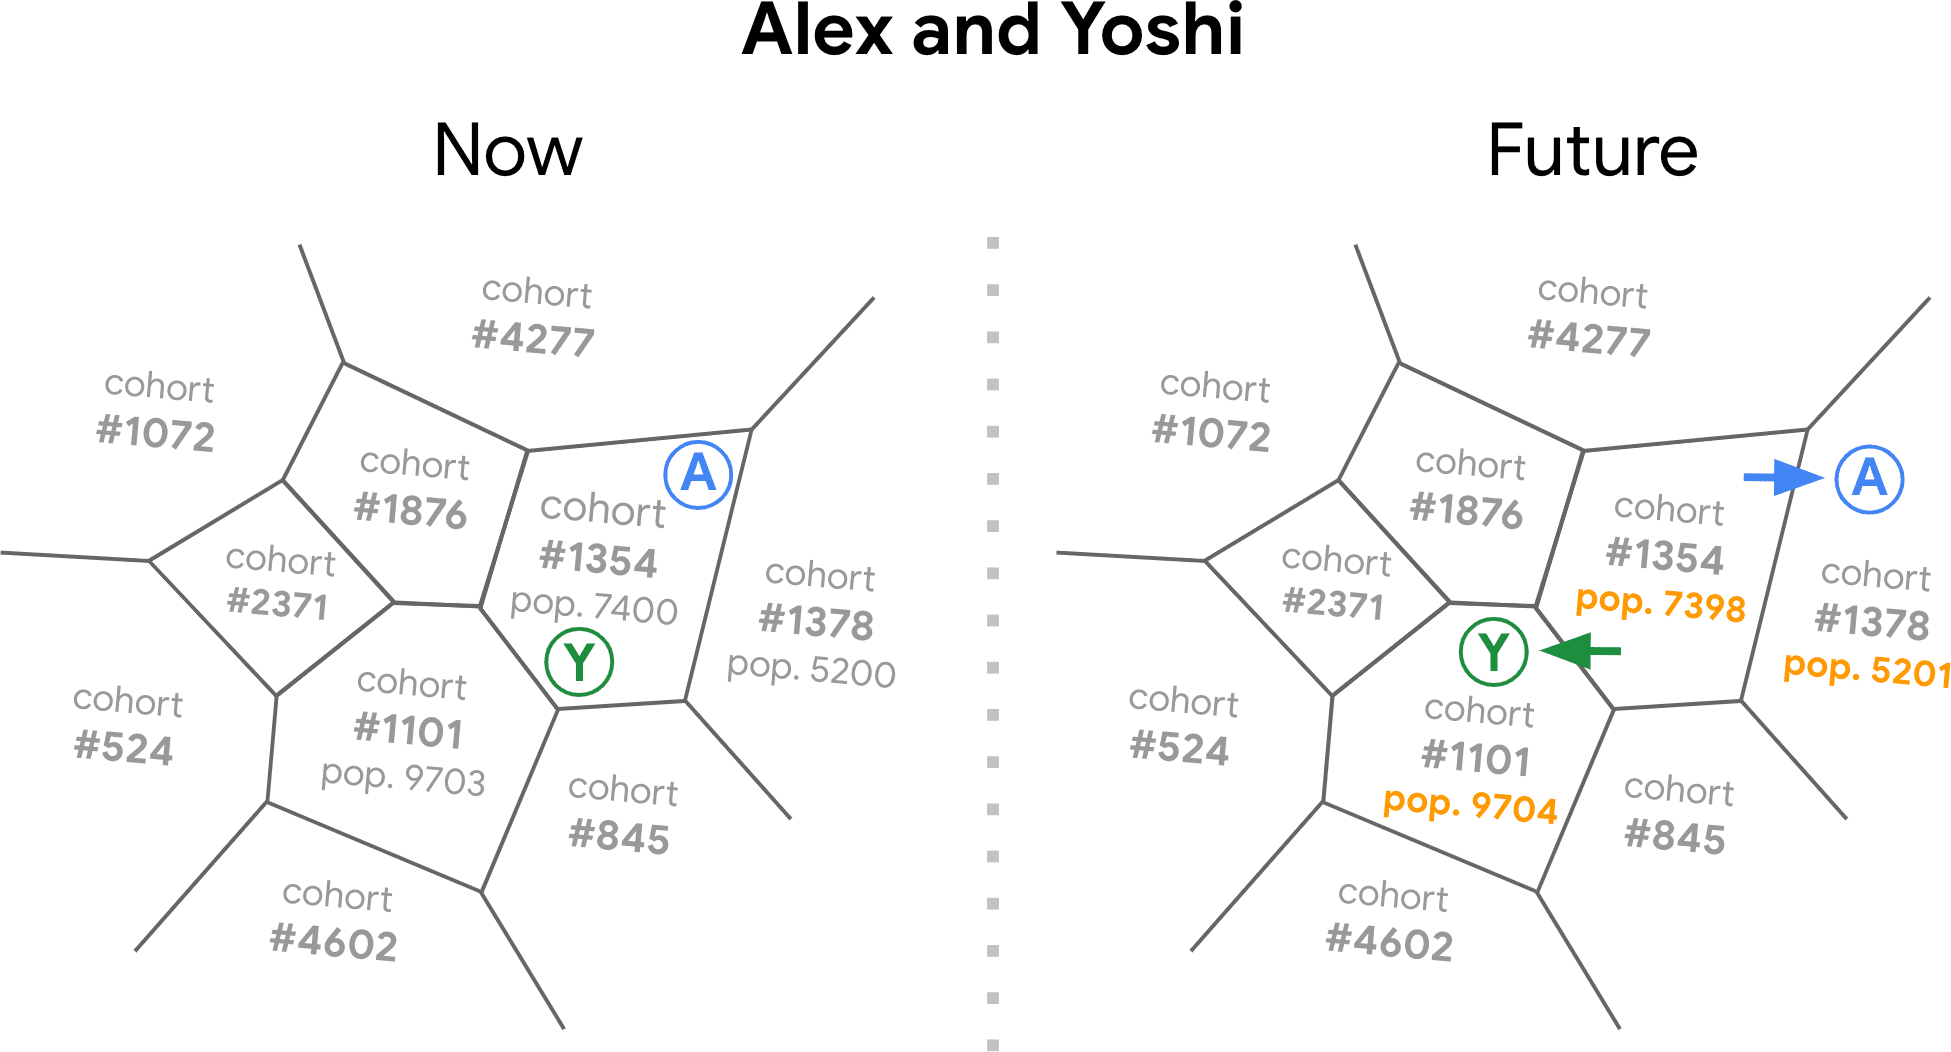 Diagram
&#39;ruang histori penjelajahan&#39; yang dibuat oleh server FLoC, yang menampilkan beberapa segmen, masing-masing dengan nomor
kohor. Diagram menunjukkan browser milik pengguna Yoshi dan Alex yang berpindah dari satu kelompok ke
kelompok lain saat minat penjelajahan mereka berubah dari waktu ke waktu.